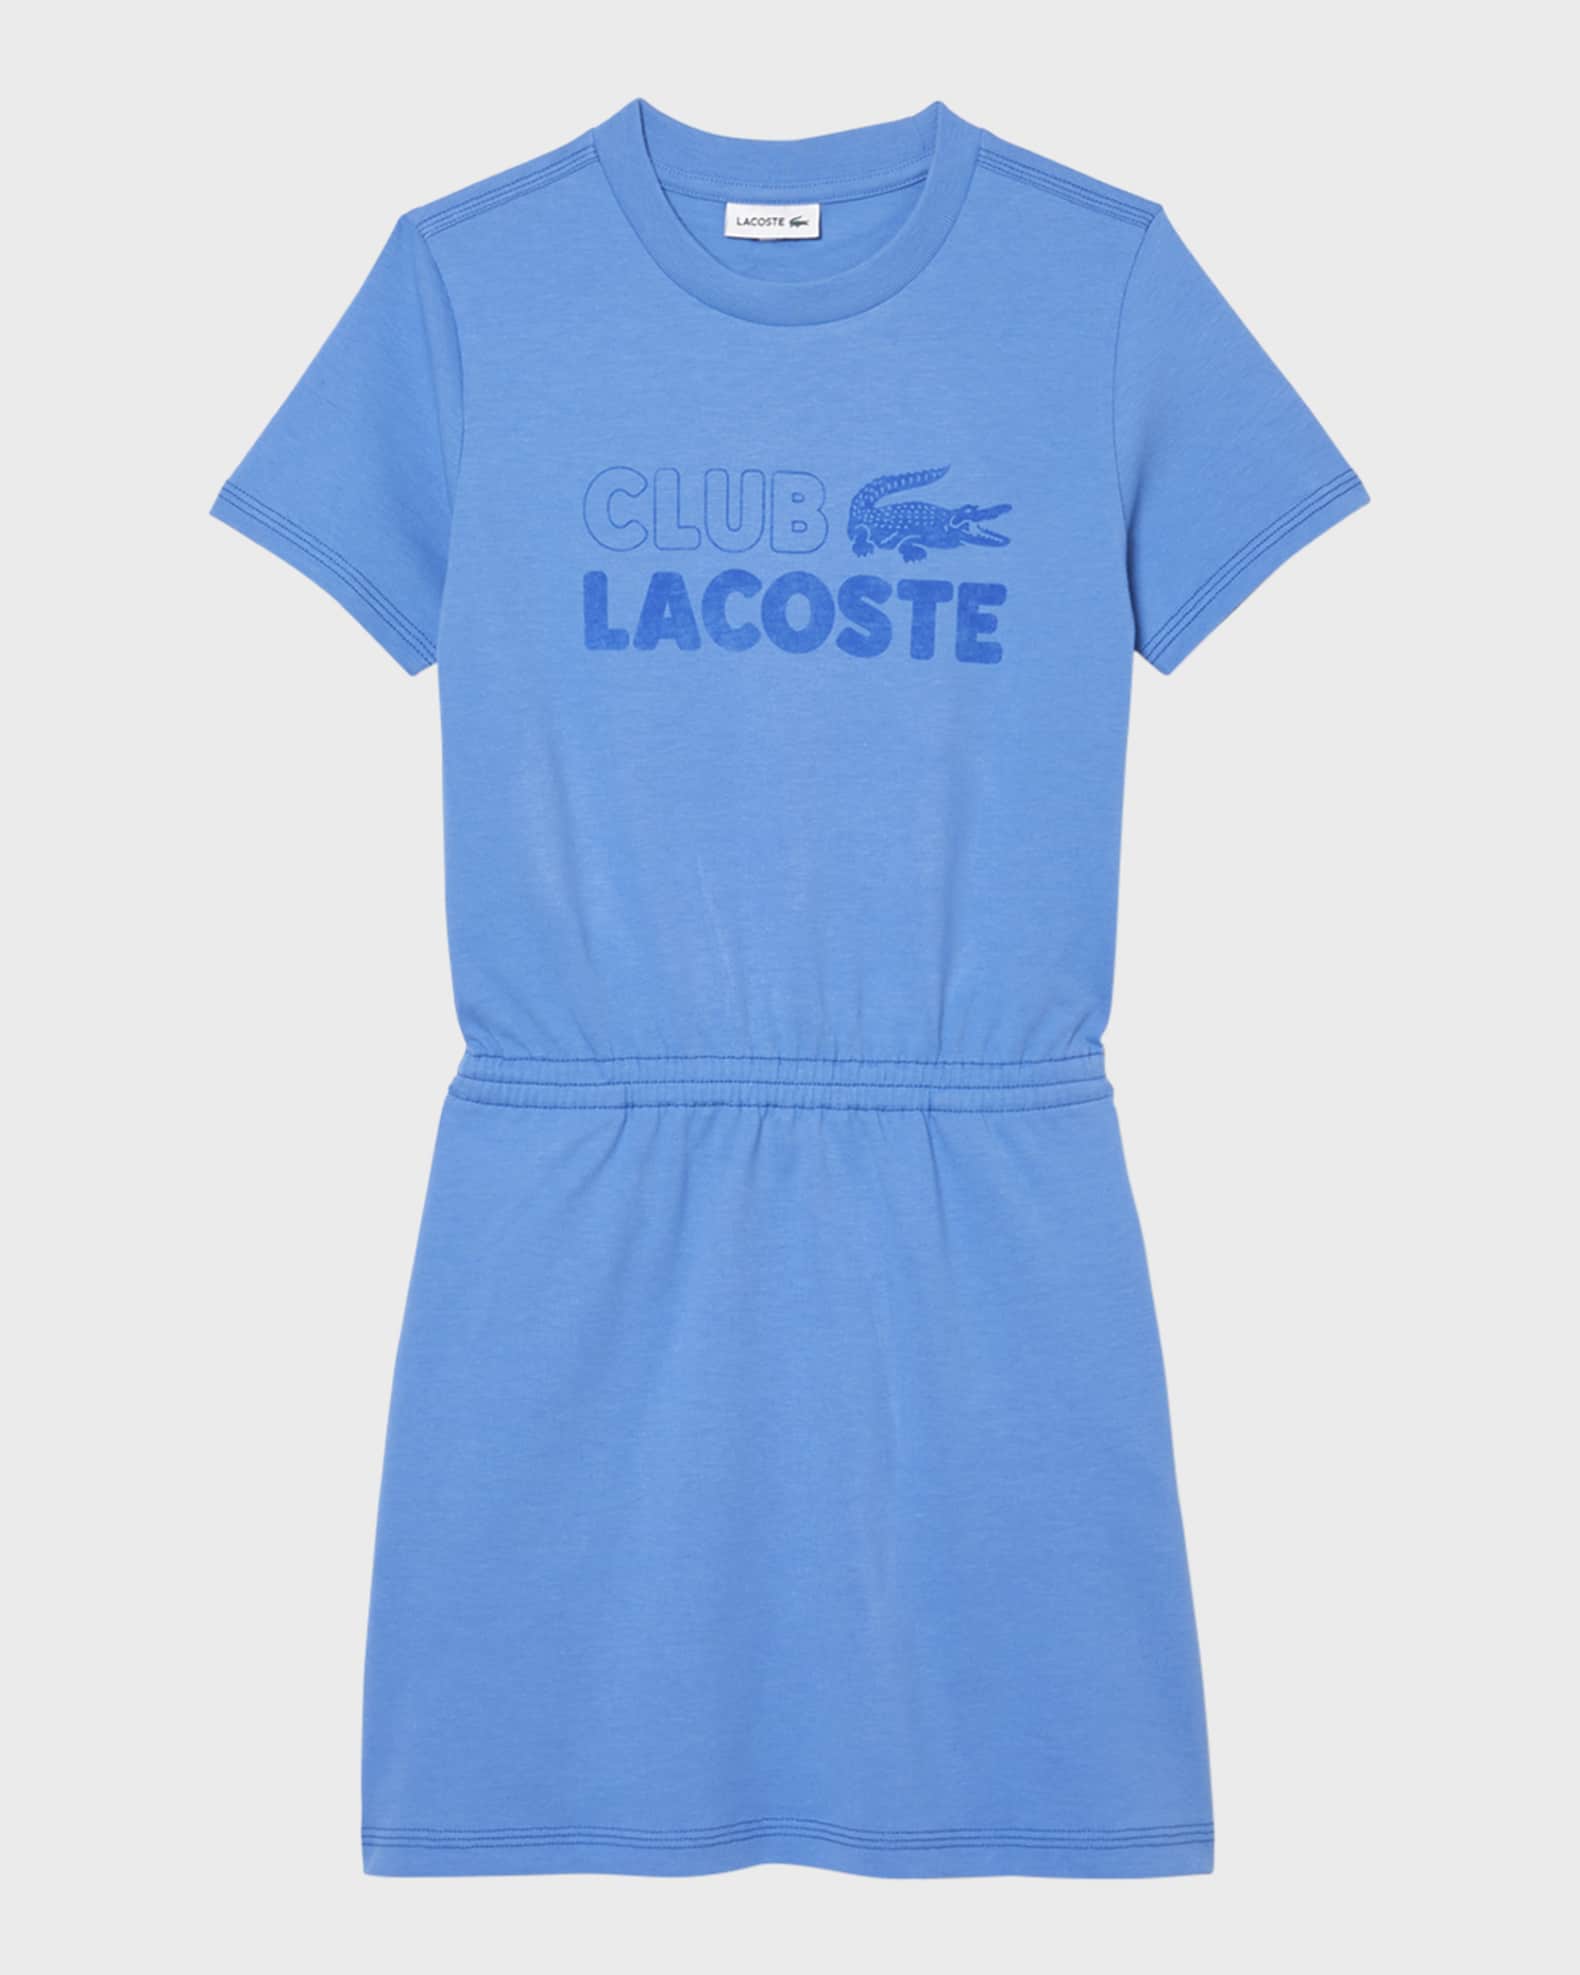 Lacoste Lacoste T-Shirt Dress, Size 2-8 Neiman Marcus